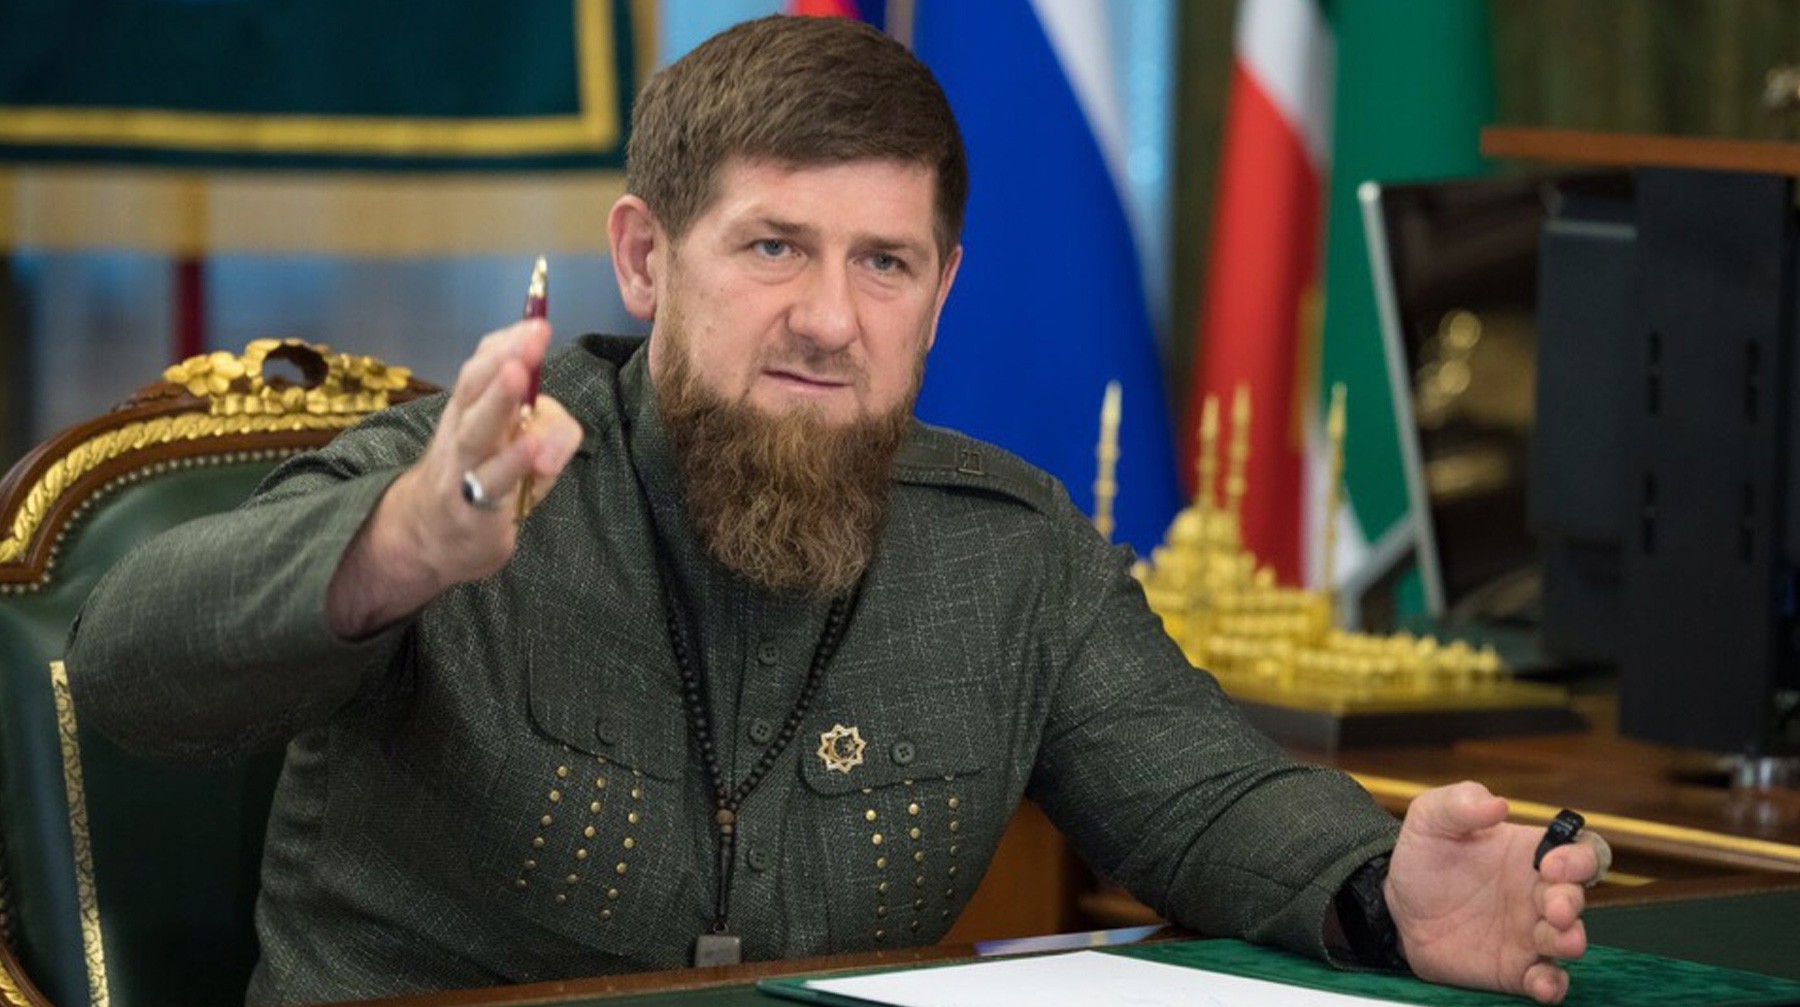 Dailystorm - «Будьте лучше мужчиной, а не игрушкой»: Кадыров упрекнул Сокурова в симпатиях к сепаратизму